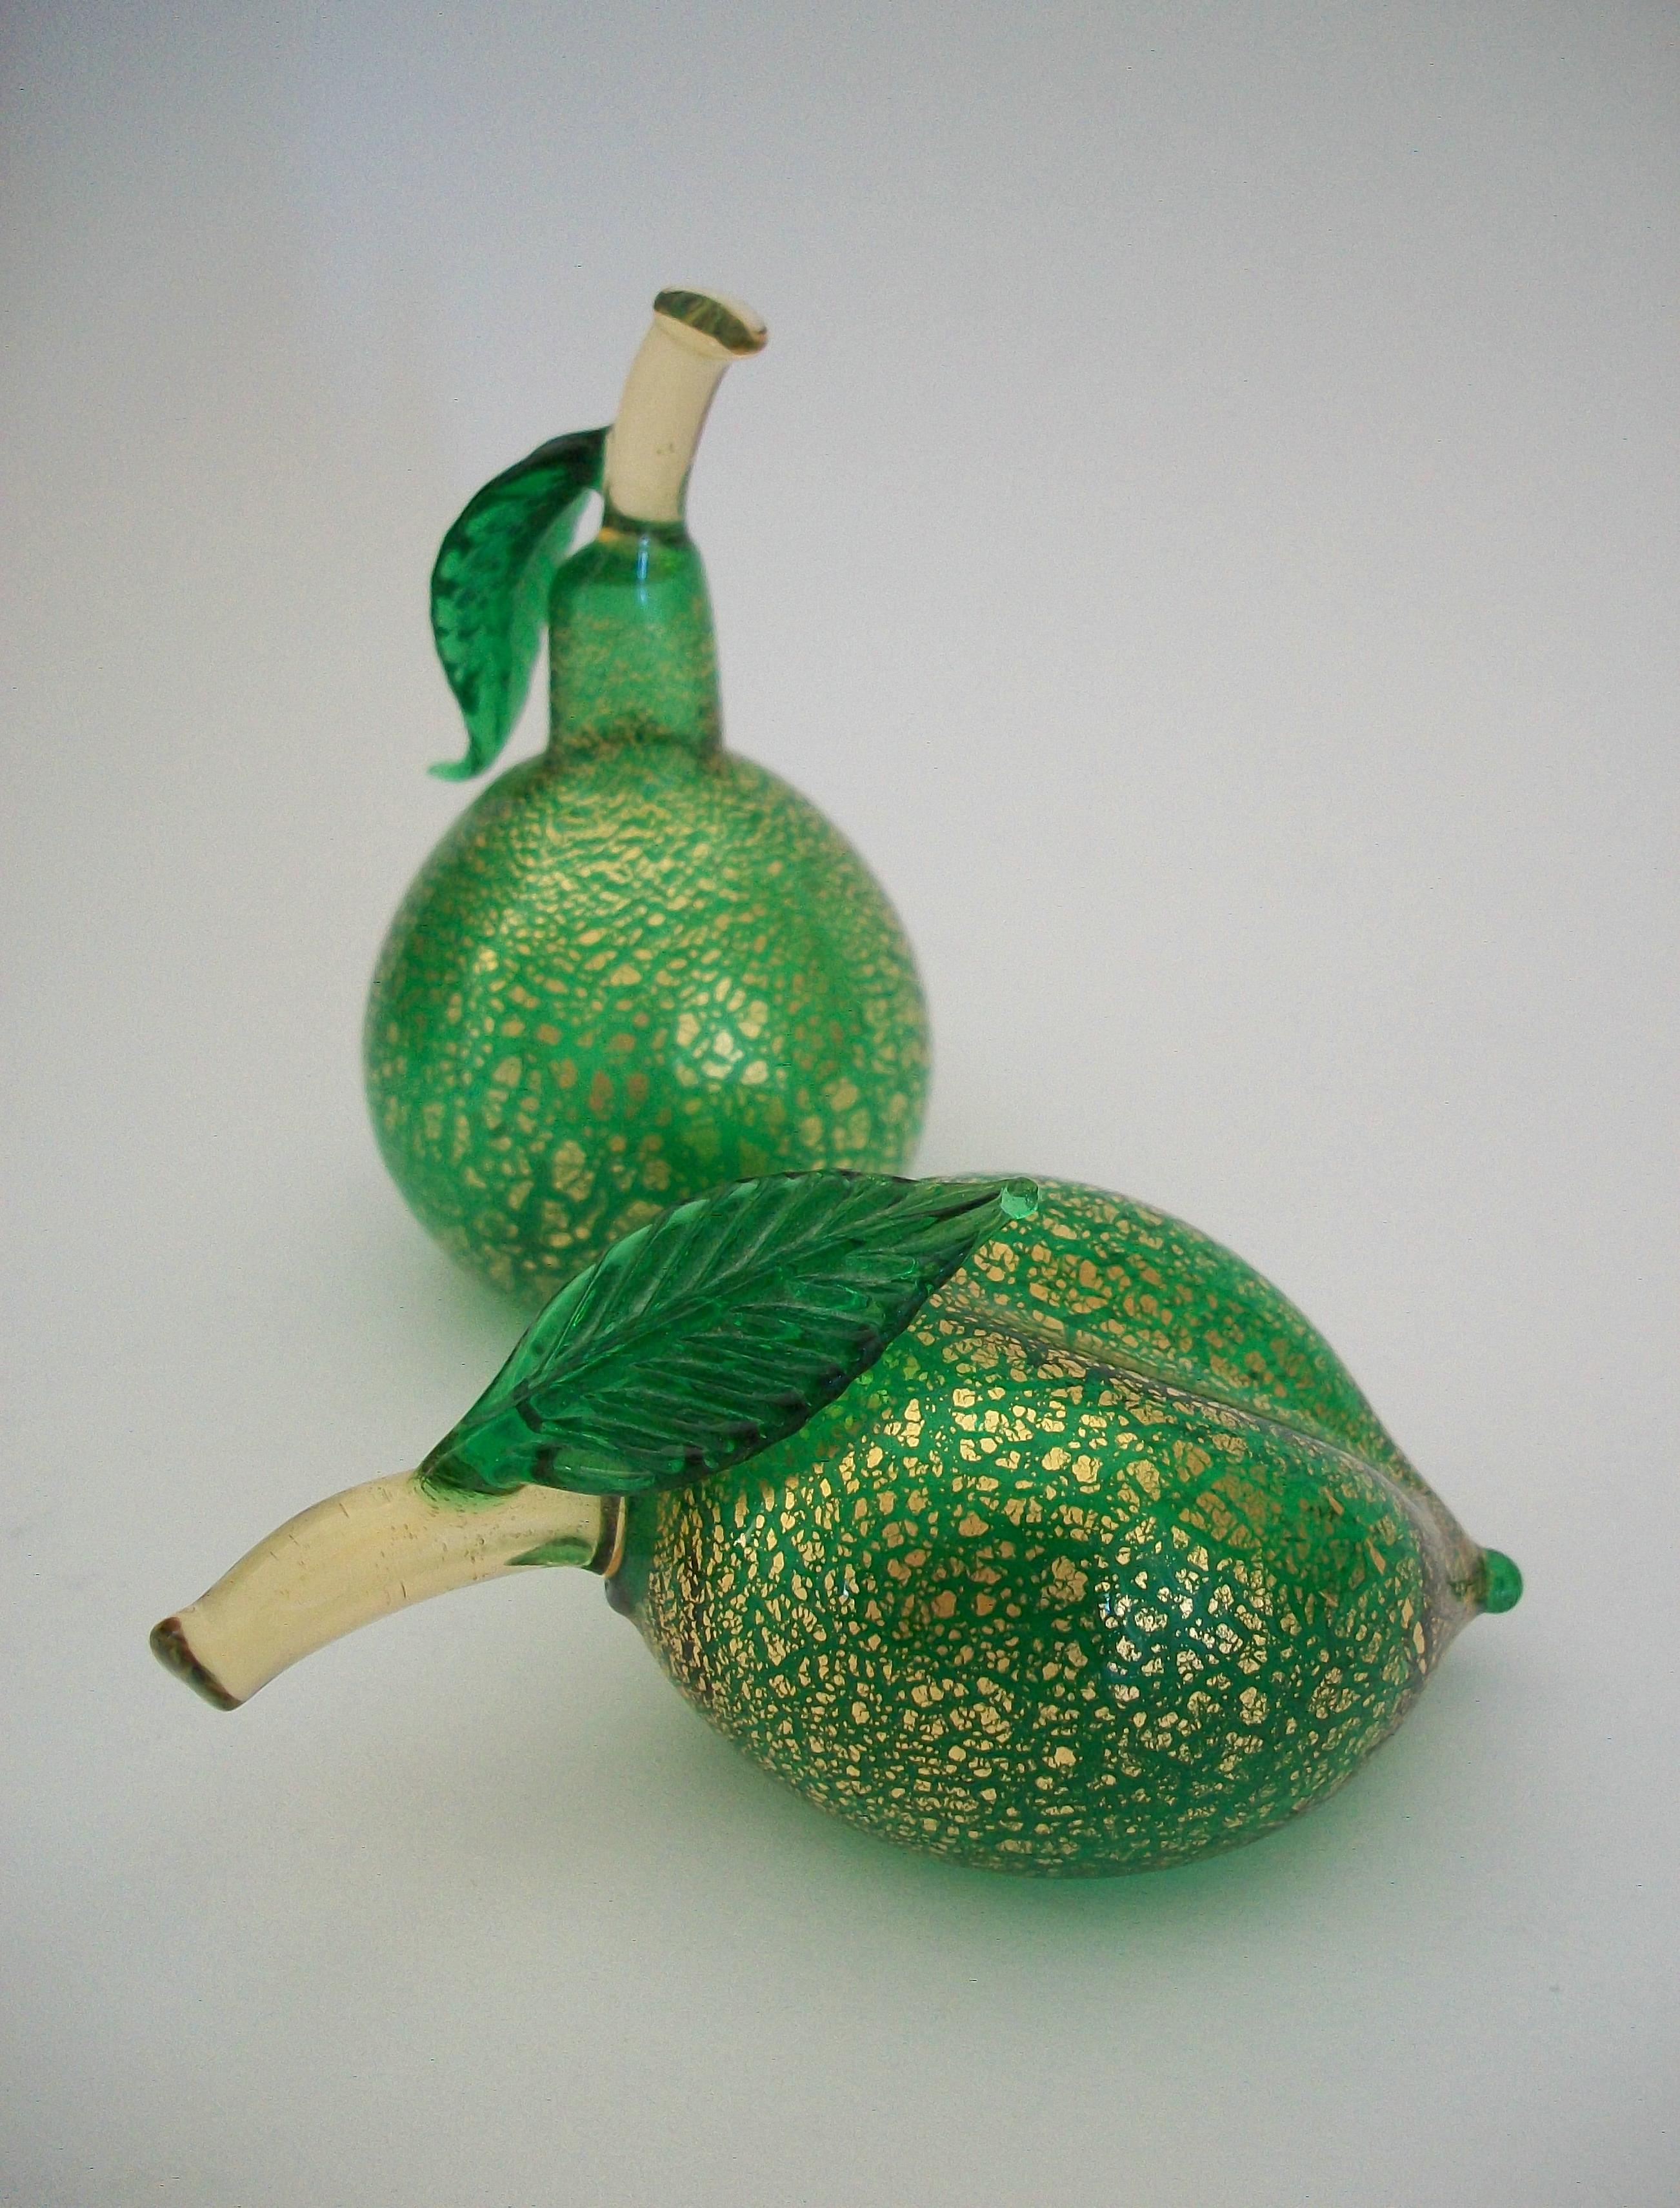 ALFREDO BARBINI (zugeschrieben) - Seltenes Murano Glas 'Zitrone und Birne' - handgefertigt / mundgeblasen mit grünen Glaskörpern und massiven Braunglasstielen und gepressten grünen Glasblättern - auffällige Goldflocken in den Körpern jedes Stücks -